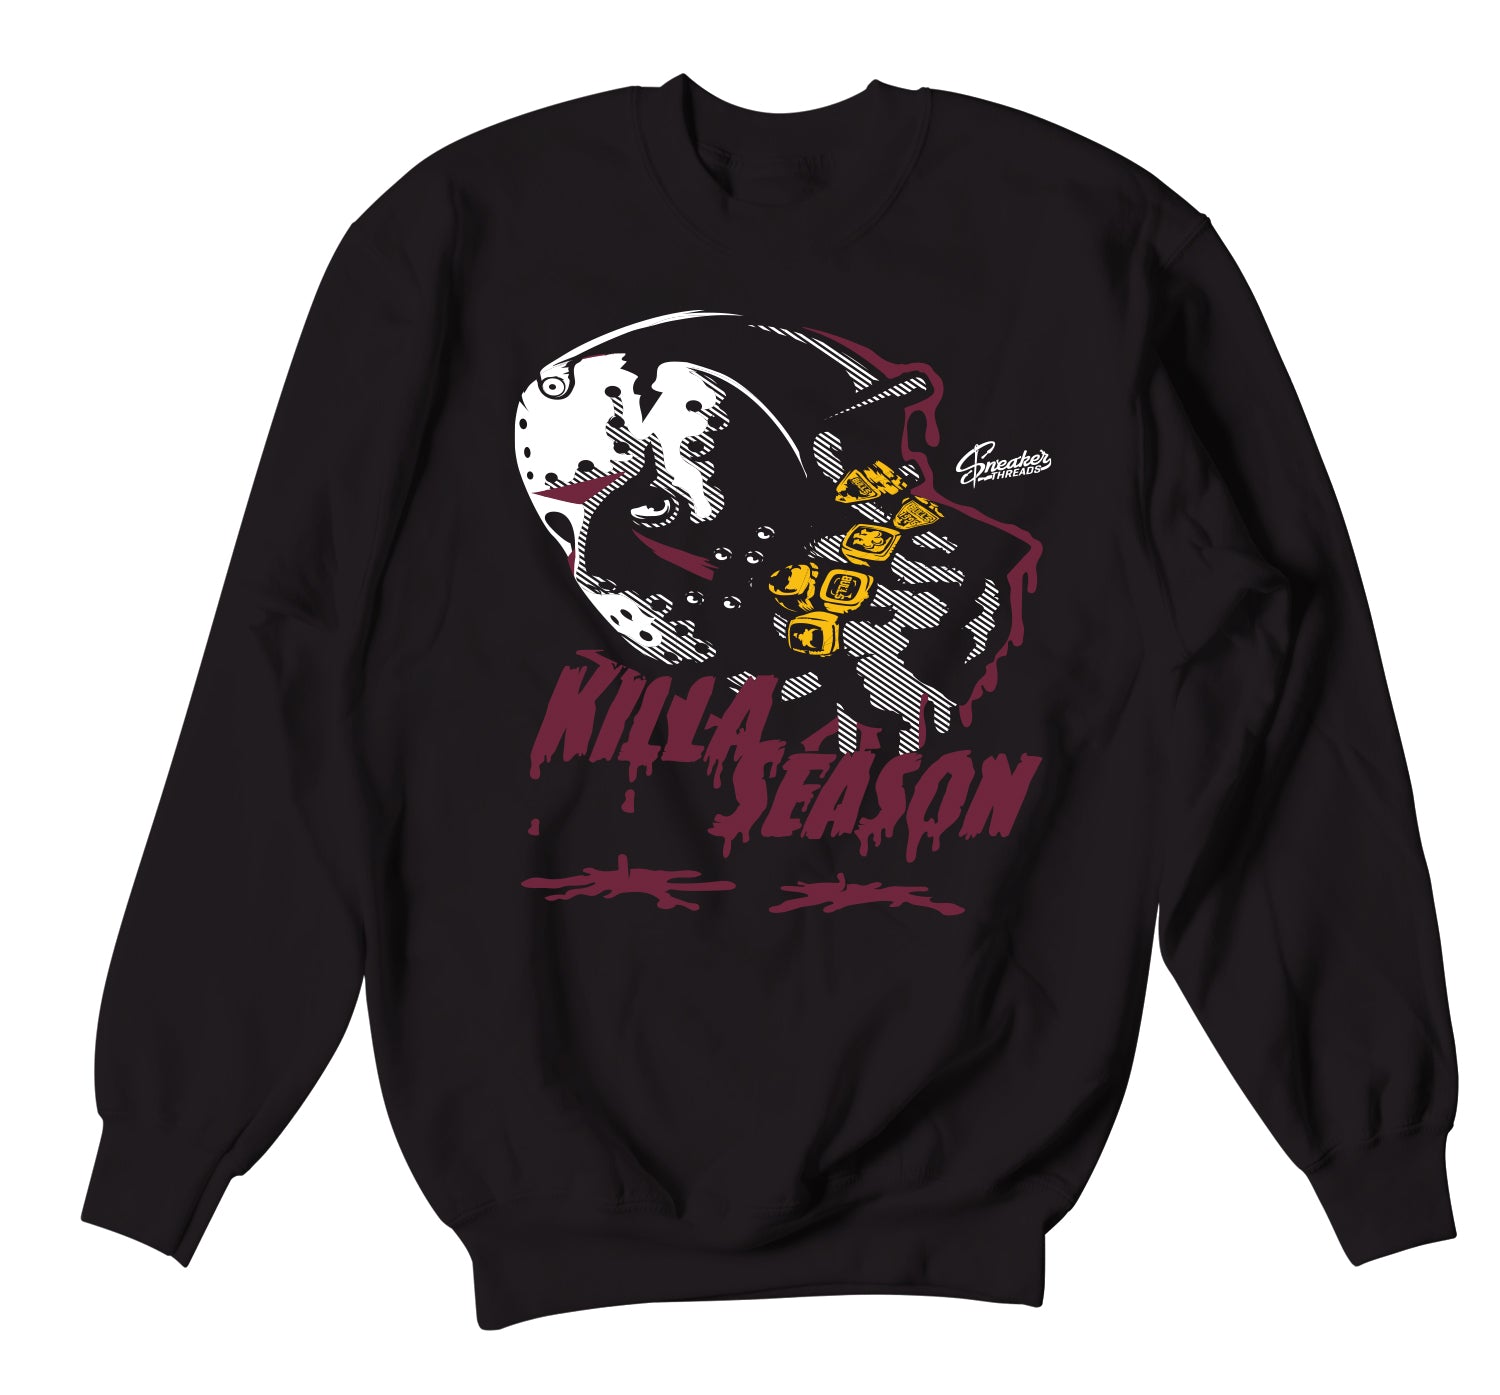 Retro 6 Bordeaux Sweater - Killa Season - Black